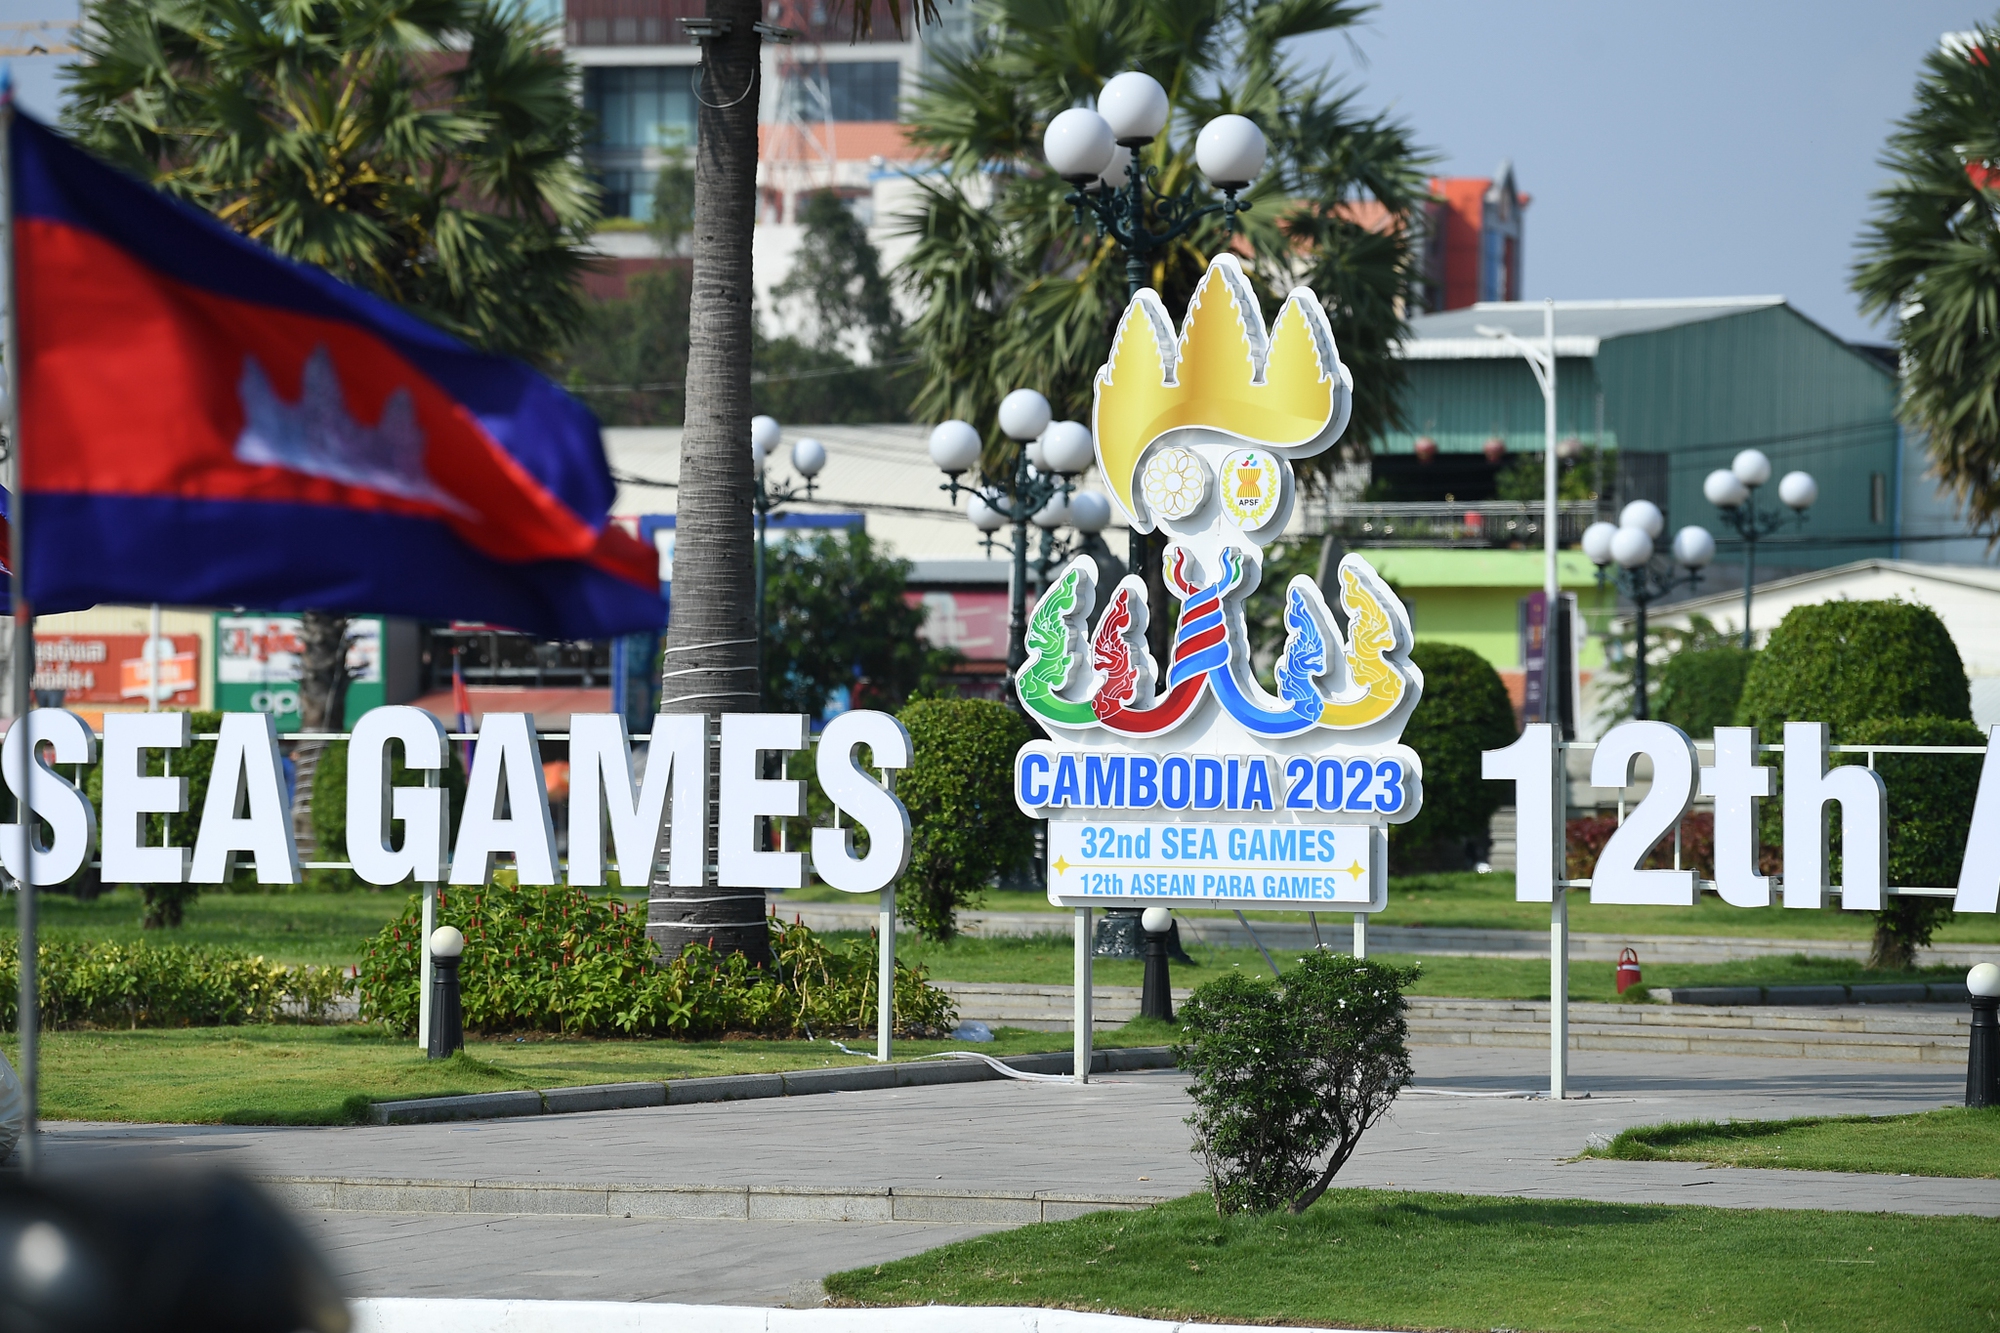 Đường phố Phnom Penh rực rỡ sắc màu sẵn sàng cho lễ khai mạc SEA Games 2023 - Ảnh 1.